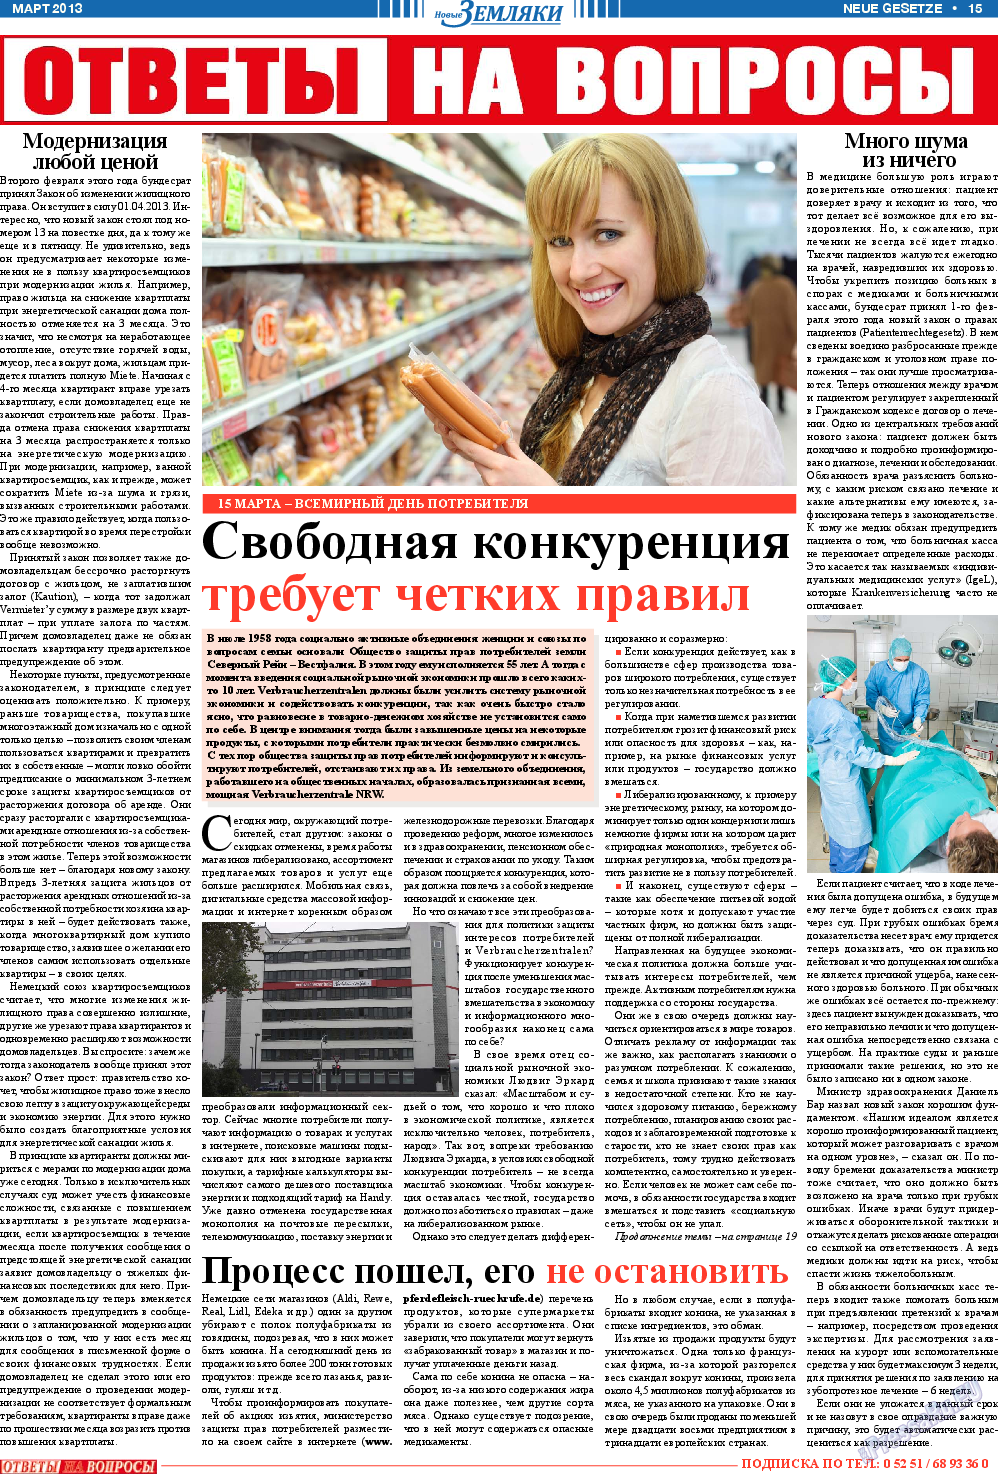 Новые Земляки, газета. 2013 №3 стр.15